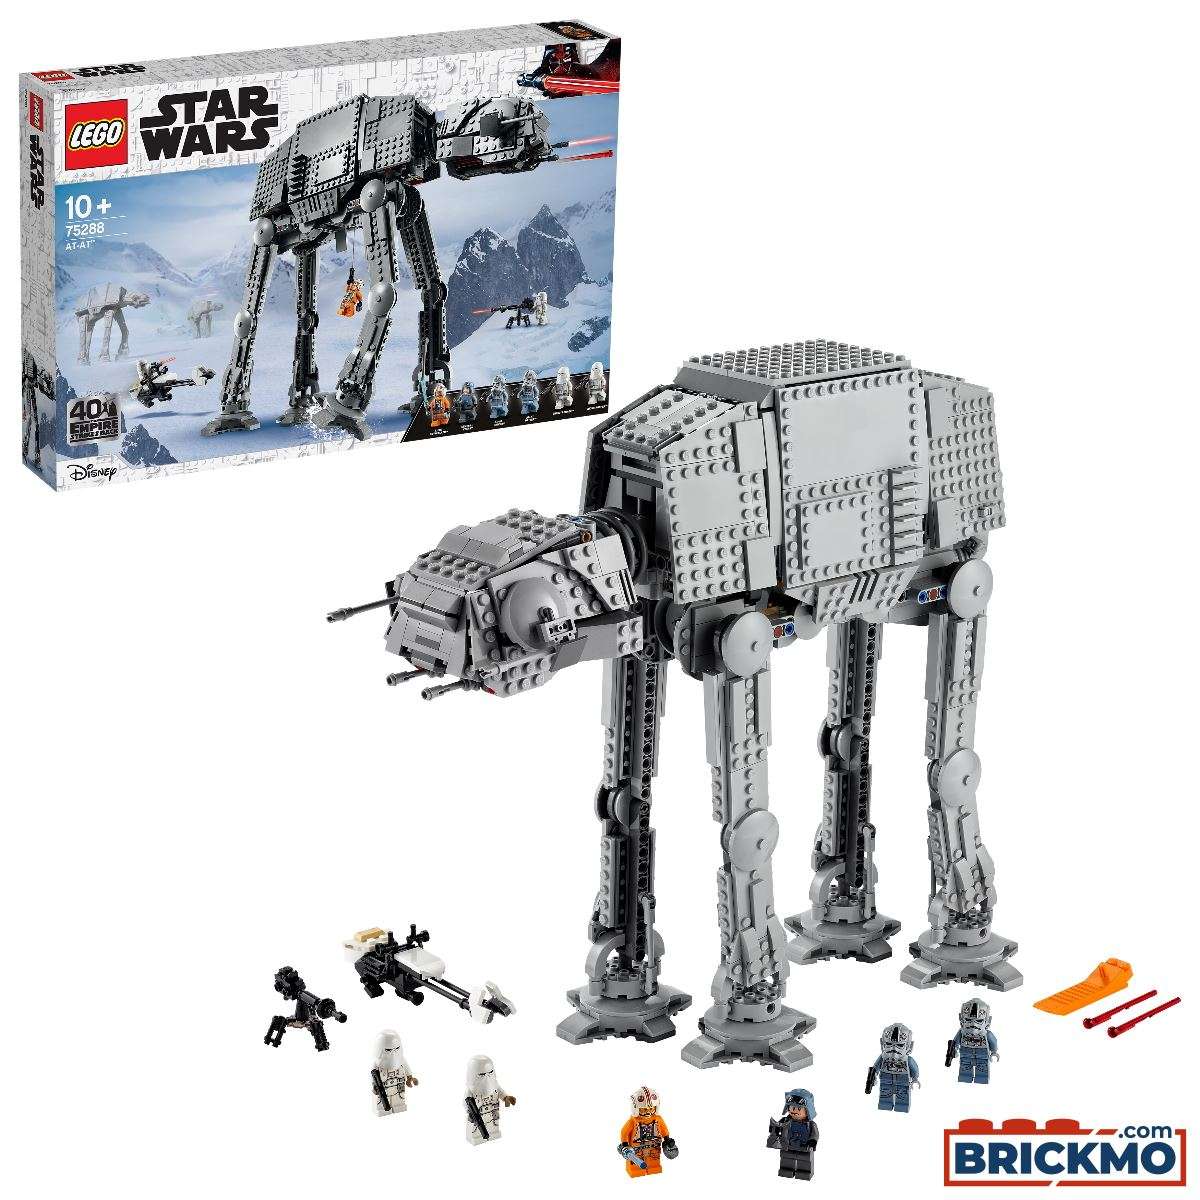 LEGO Star Wars 75288 AT-AT 75288